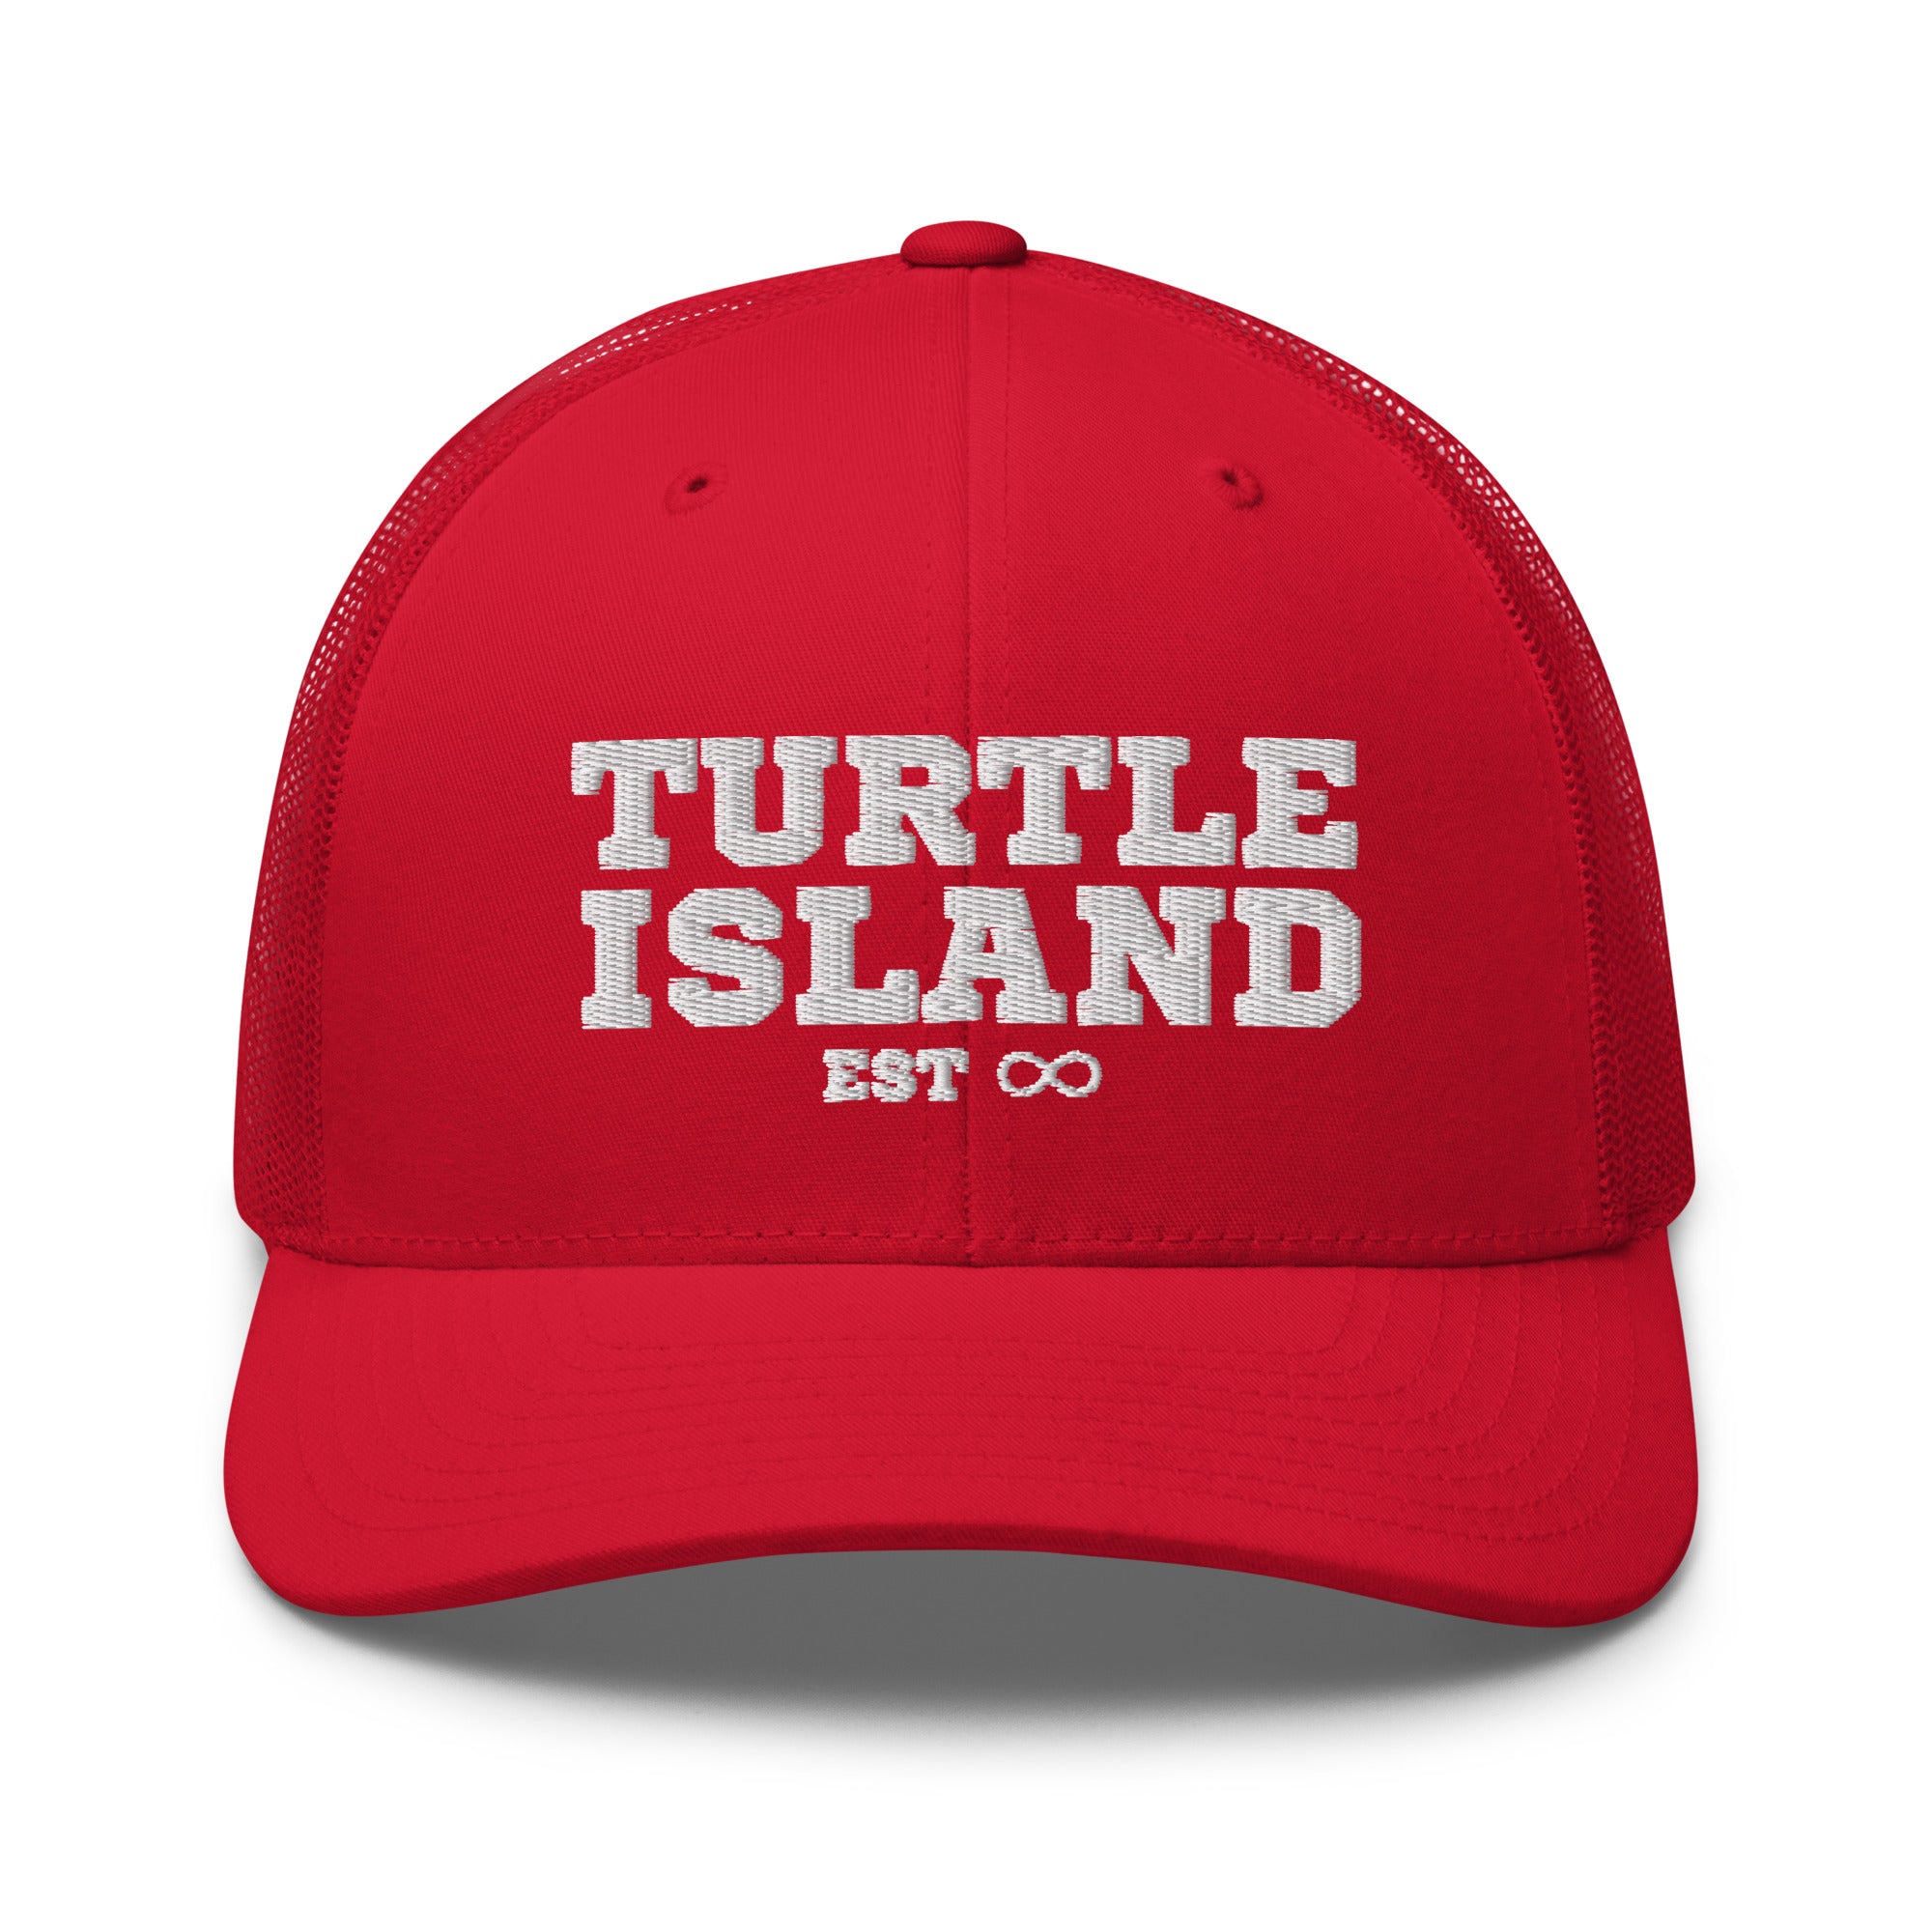 TURTLE ISLAND Mesh Cap